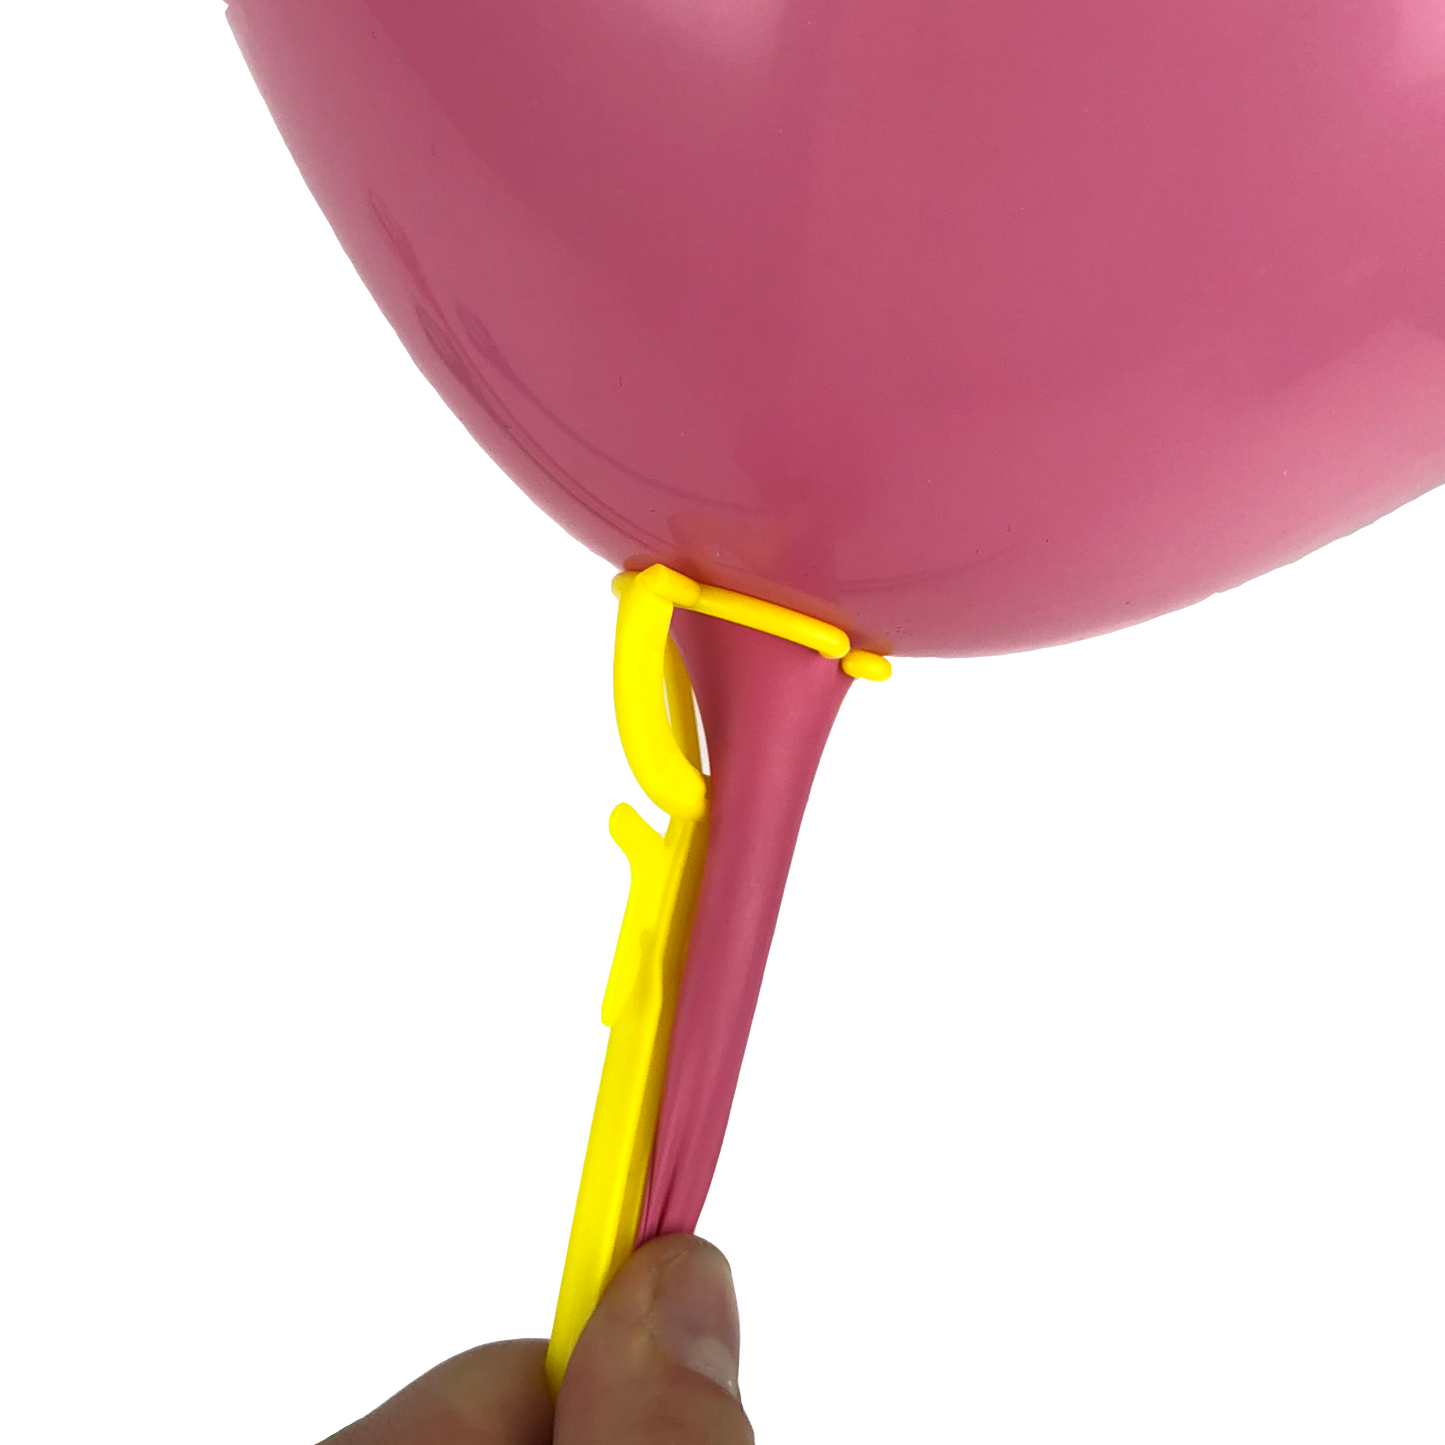 ZBS-006 - 100 einteilige gelbe Ballon-Haltestäbe 35 cm